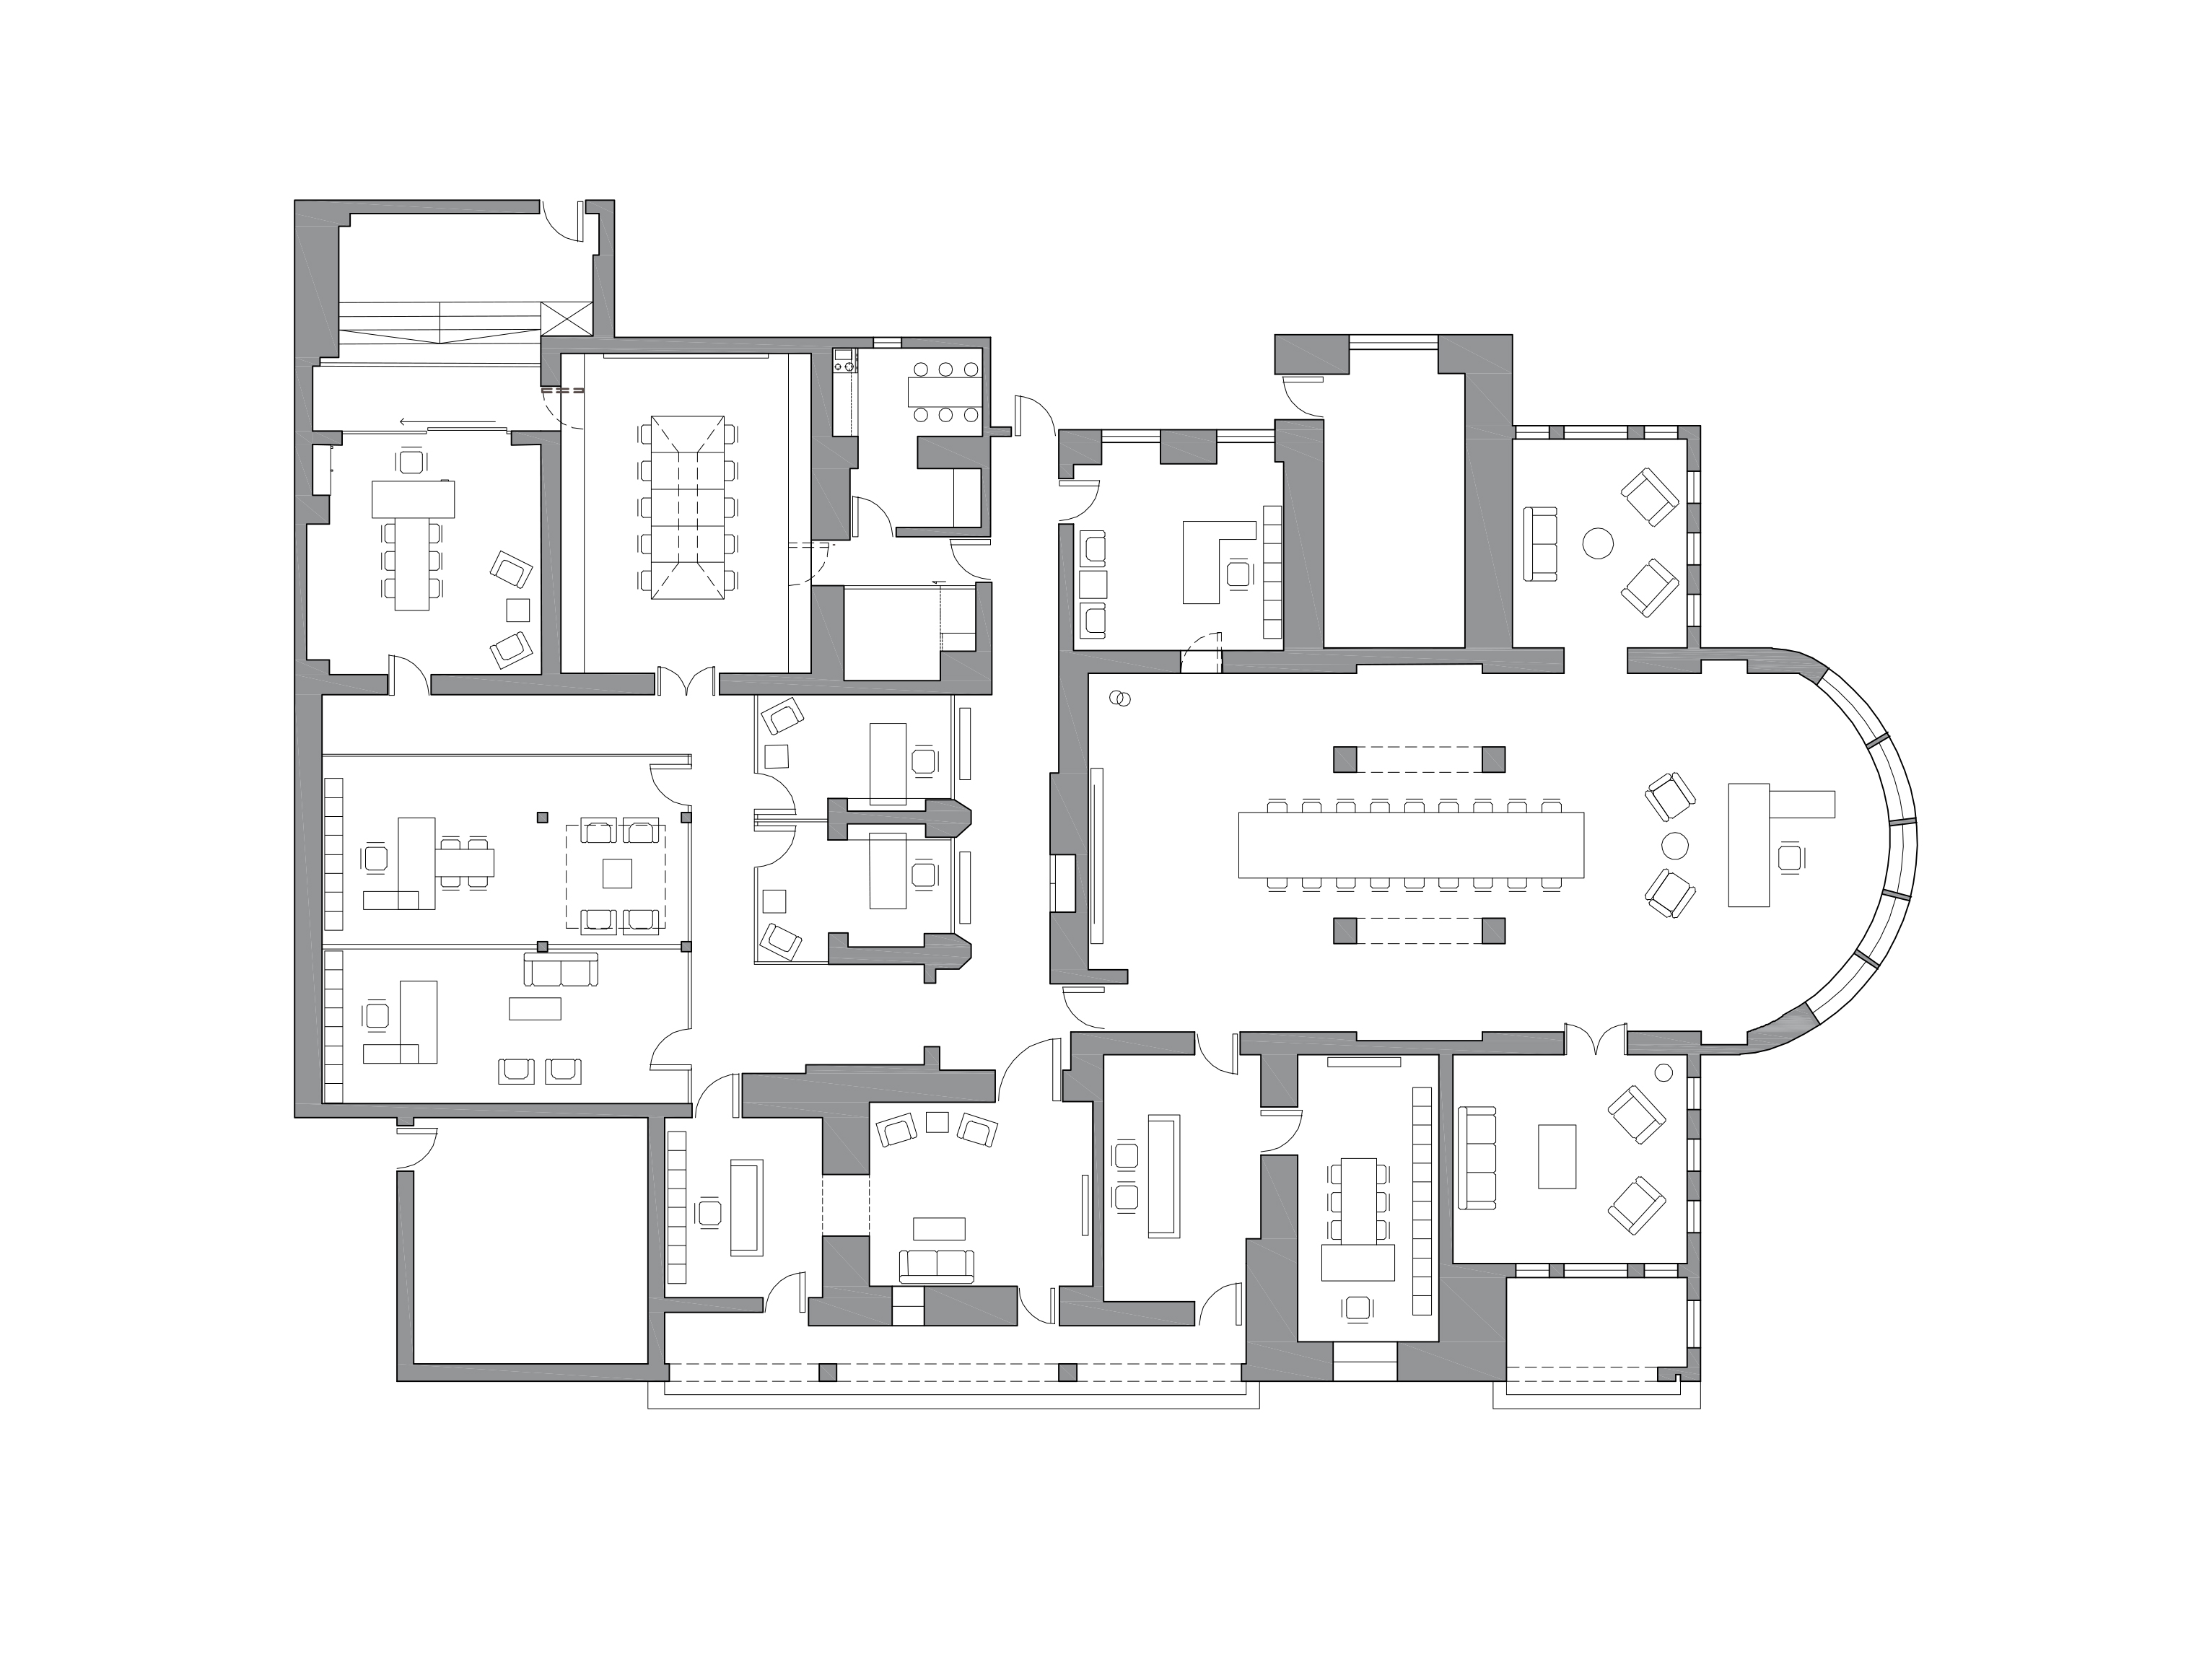 Honar Office / Renovation & Interior Design